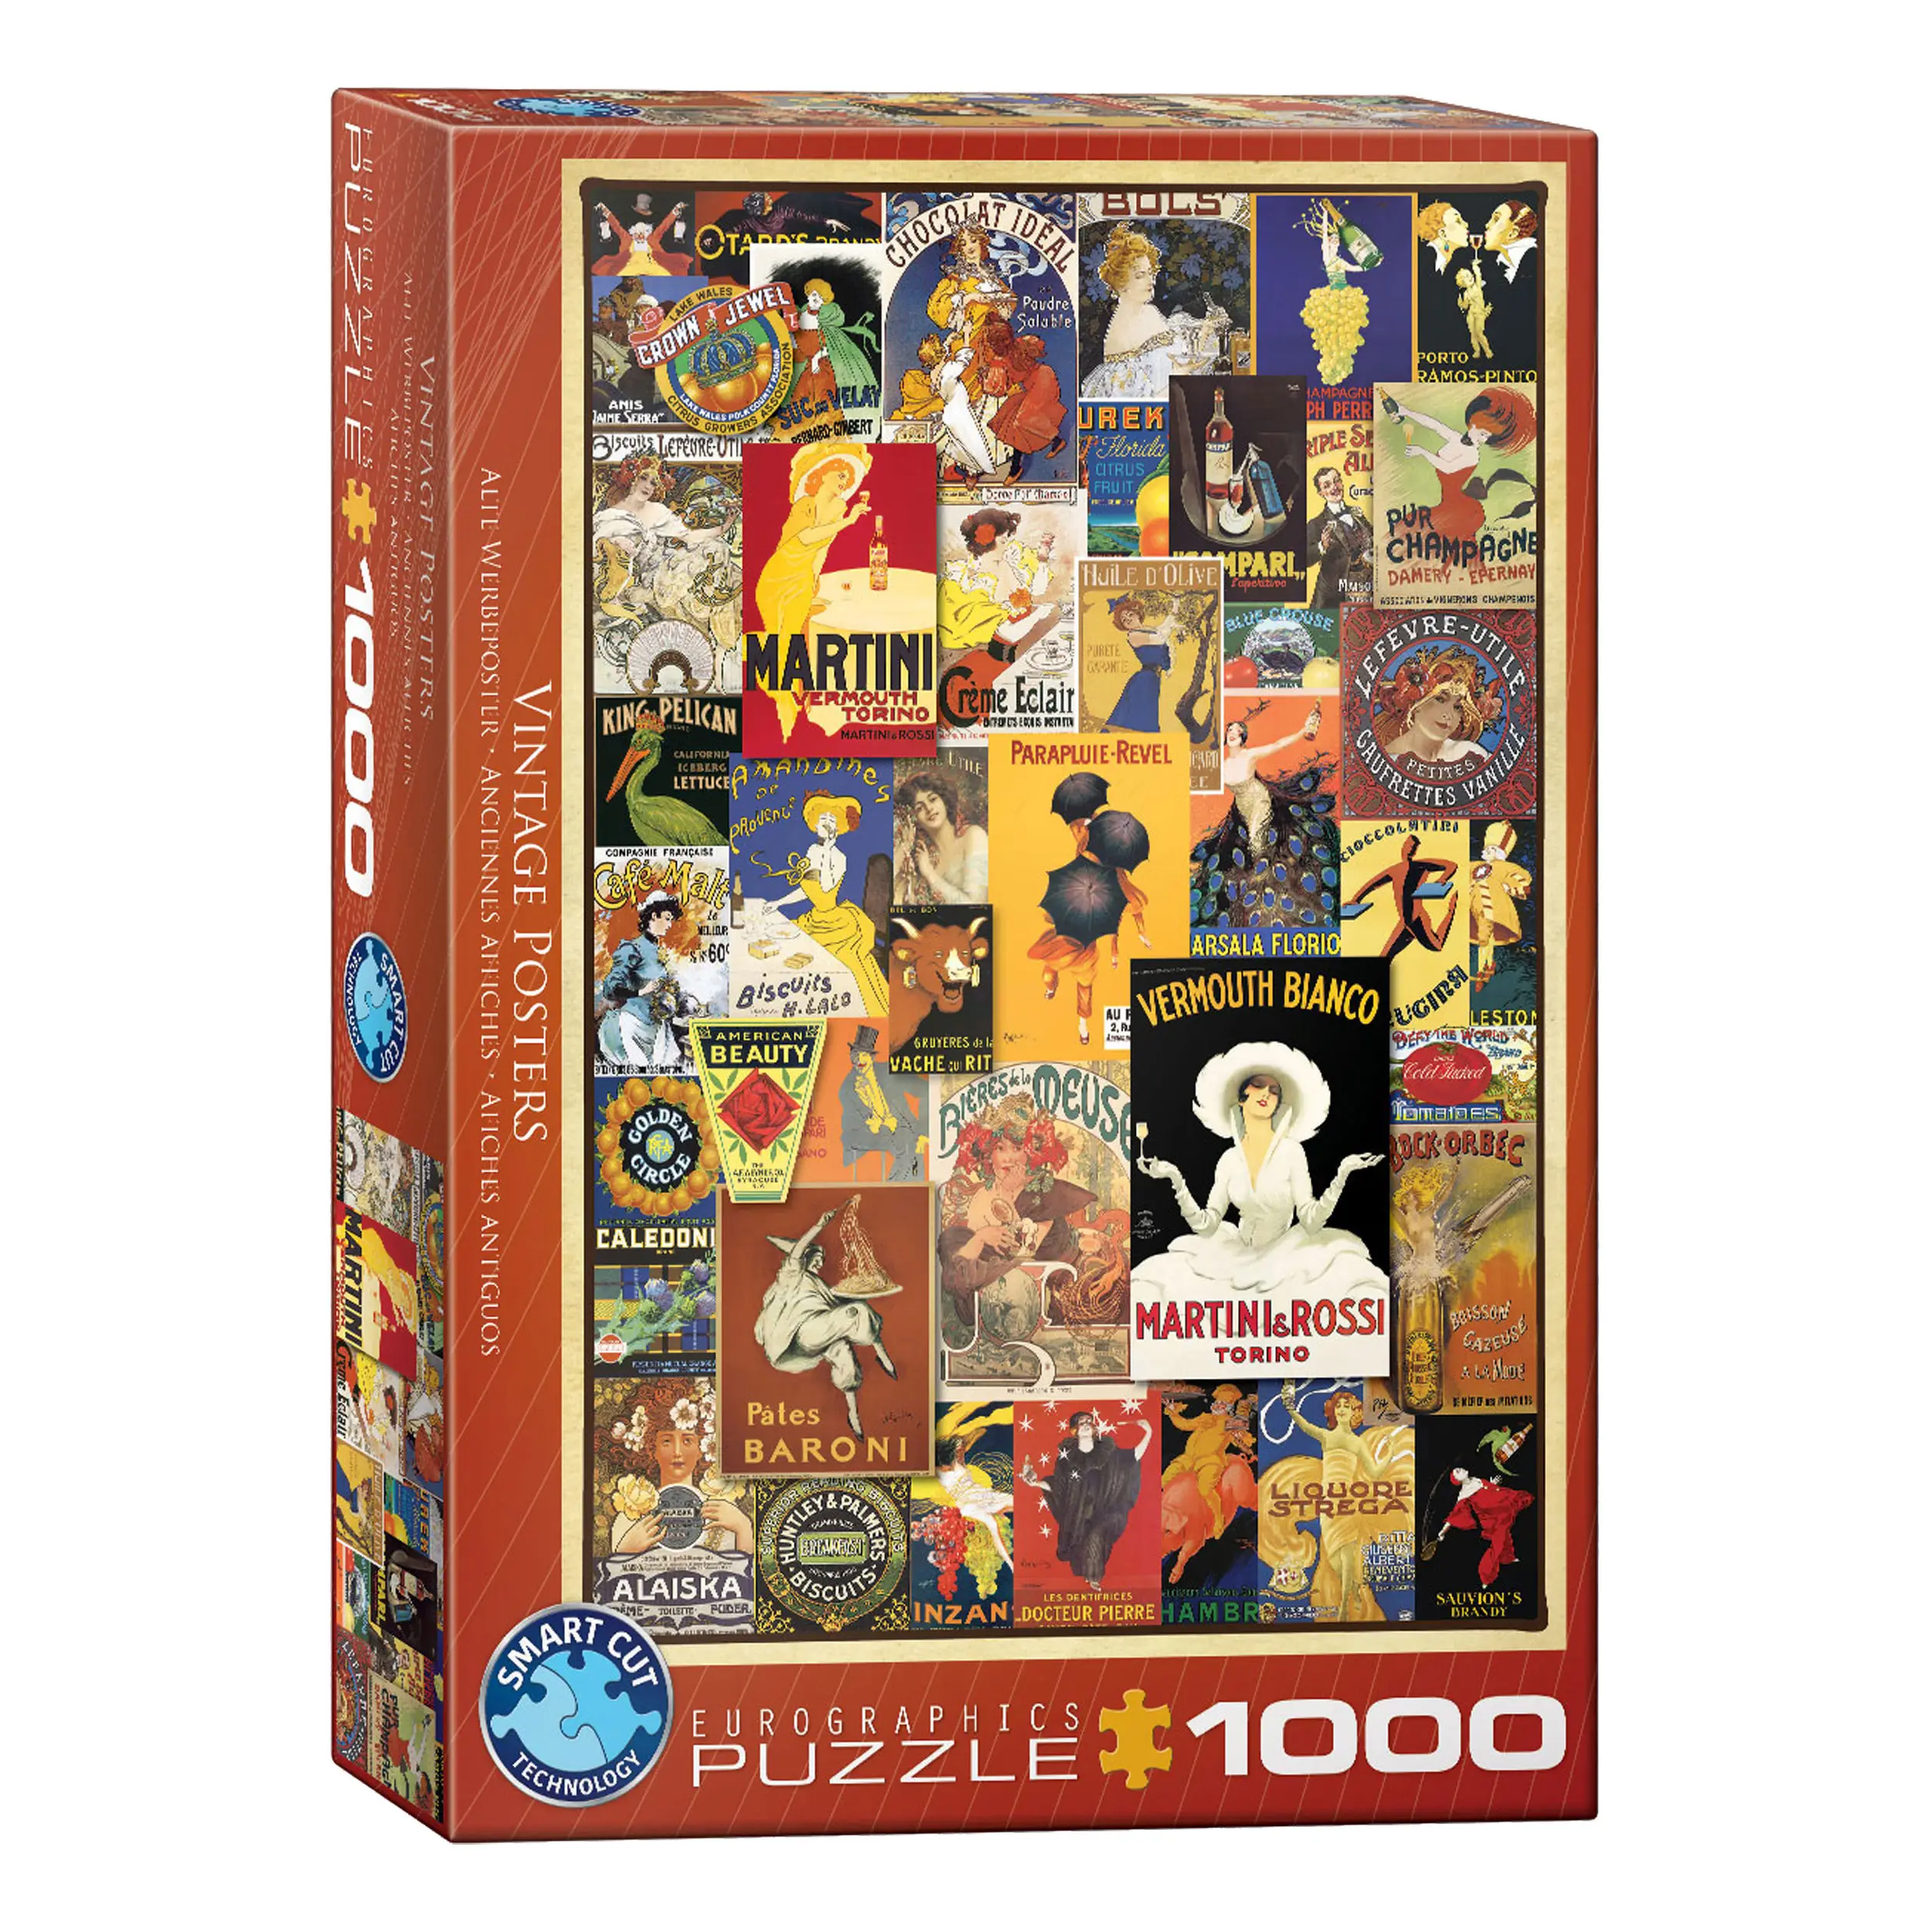 Puzzle Vintage Poster 1000 Teile